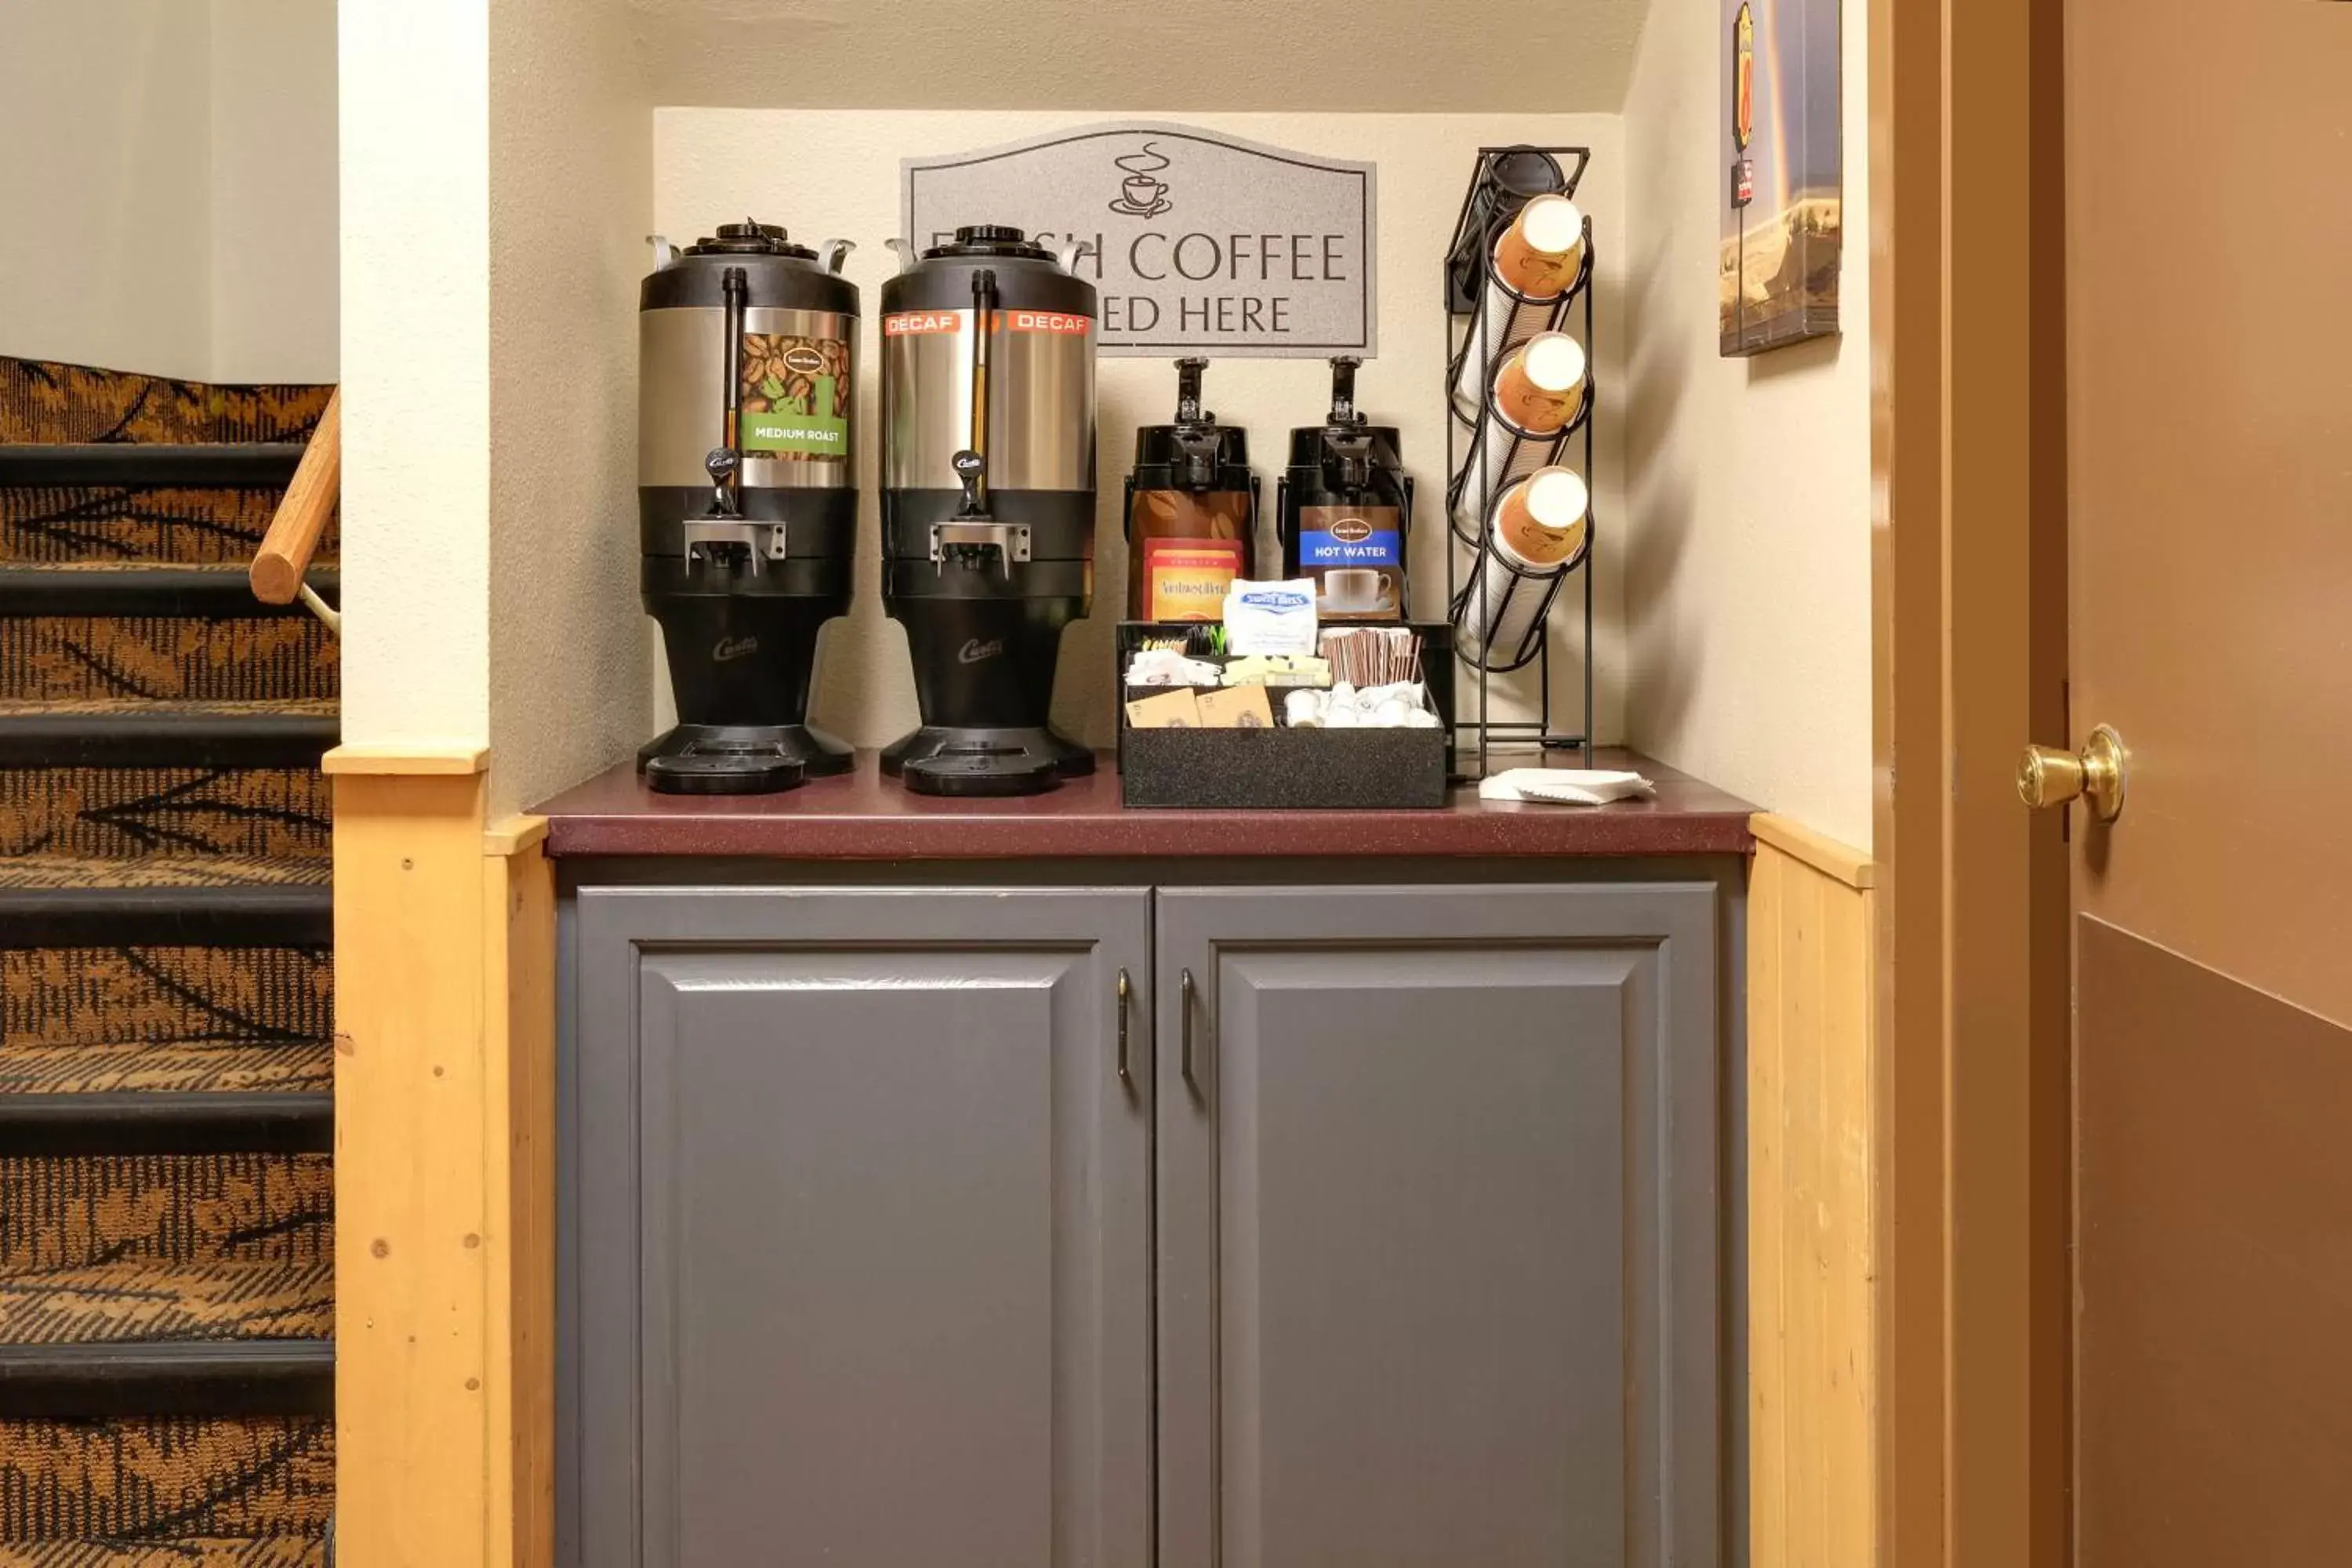 Coffee/tea facilities, Lobby/Reception in Super 8 by Wyndham Cody